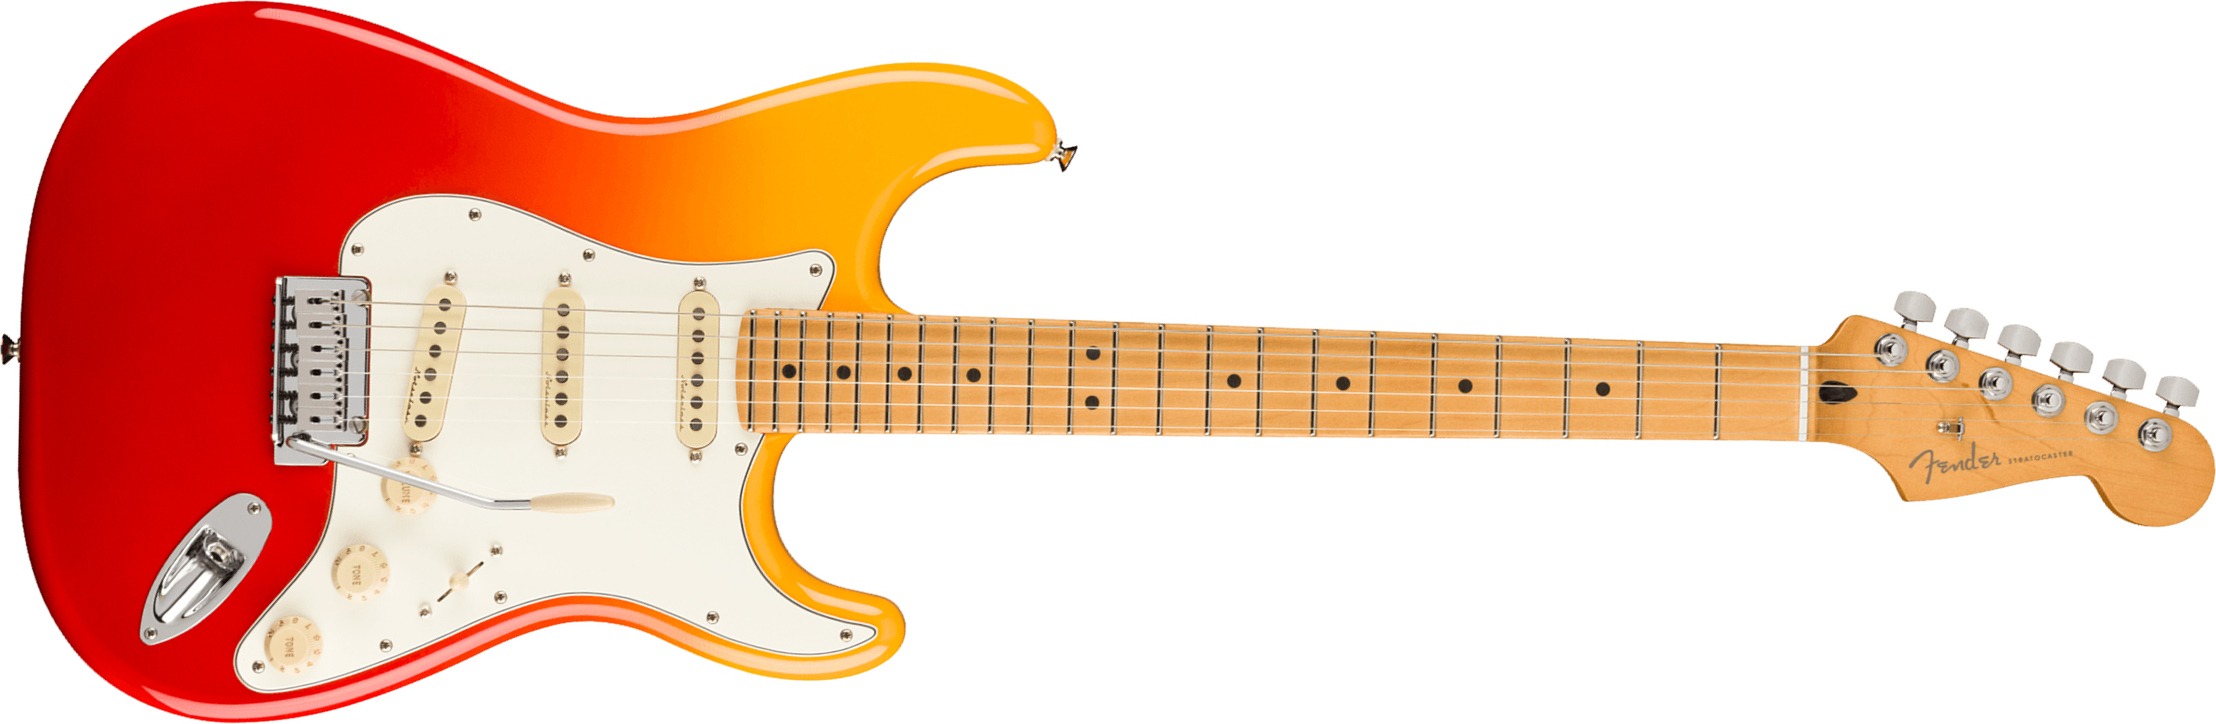 Fender Strat Player Plus Mex 3s Trem Mn - Tequila Sunrise - Guitare Électrique Forme Str - Main picture